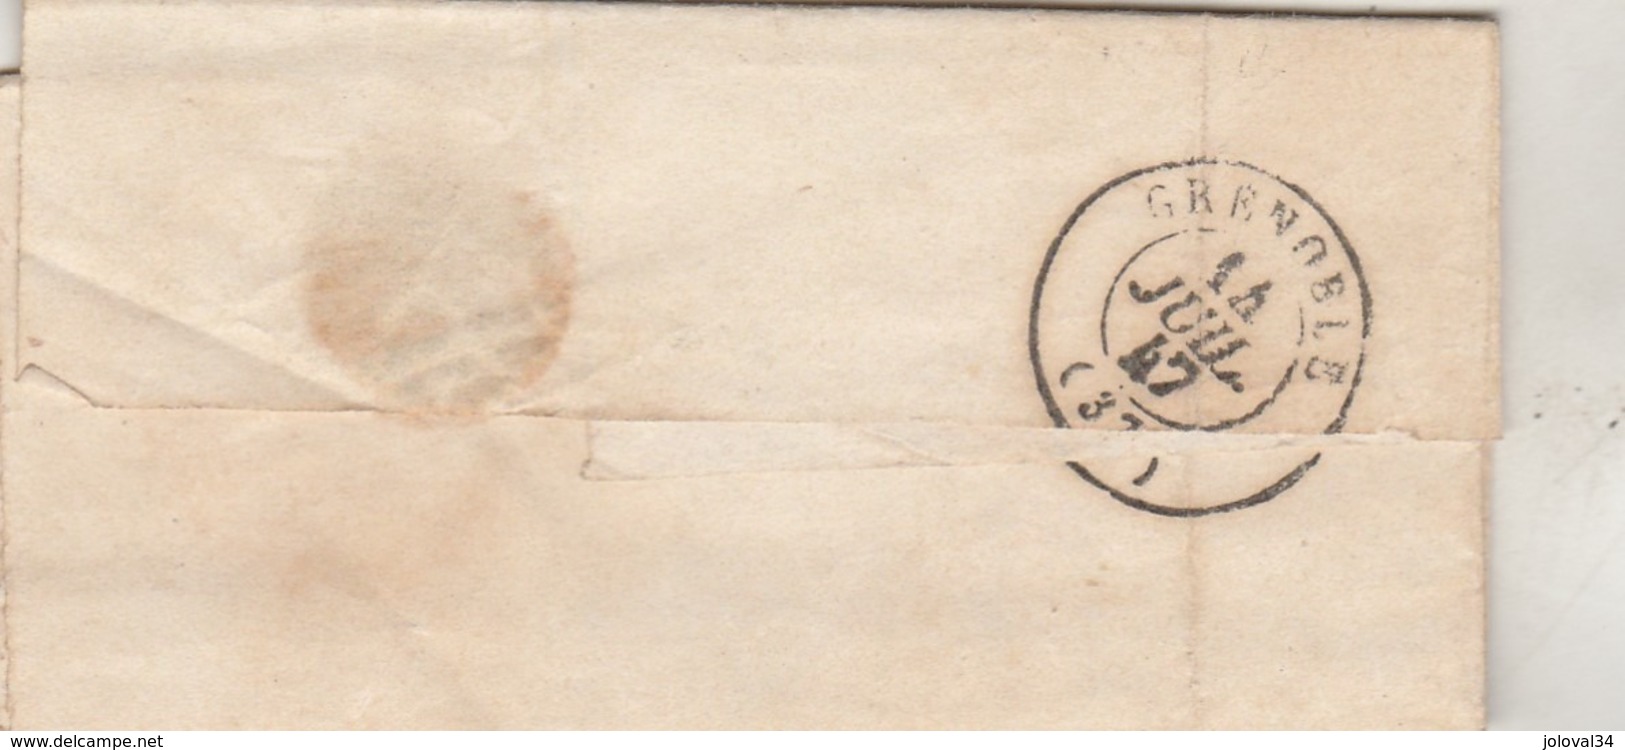 LAC Marque Postale Cursive 37 ST LAURENT DU PONT Cachet VOIRON Isère 14/7/1847 Taxe Manuscrite à Grenoble - 1801-1848: Précurseurs XIX